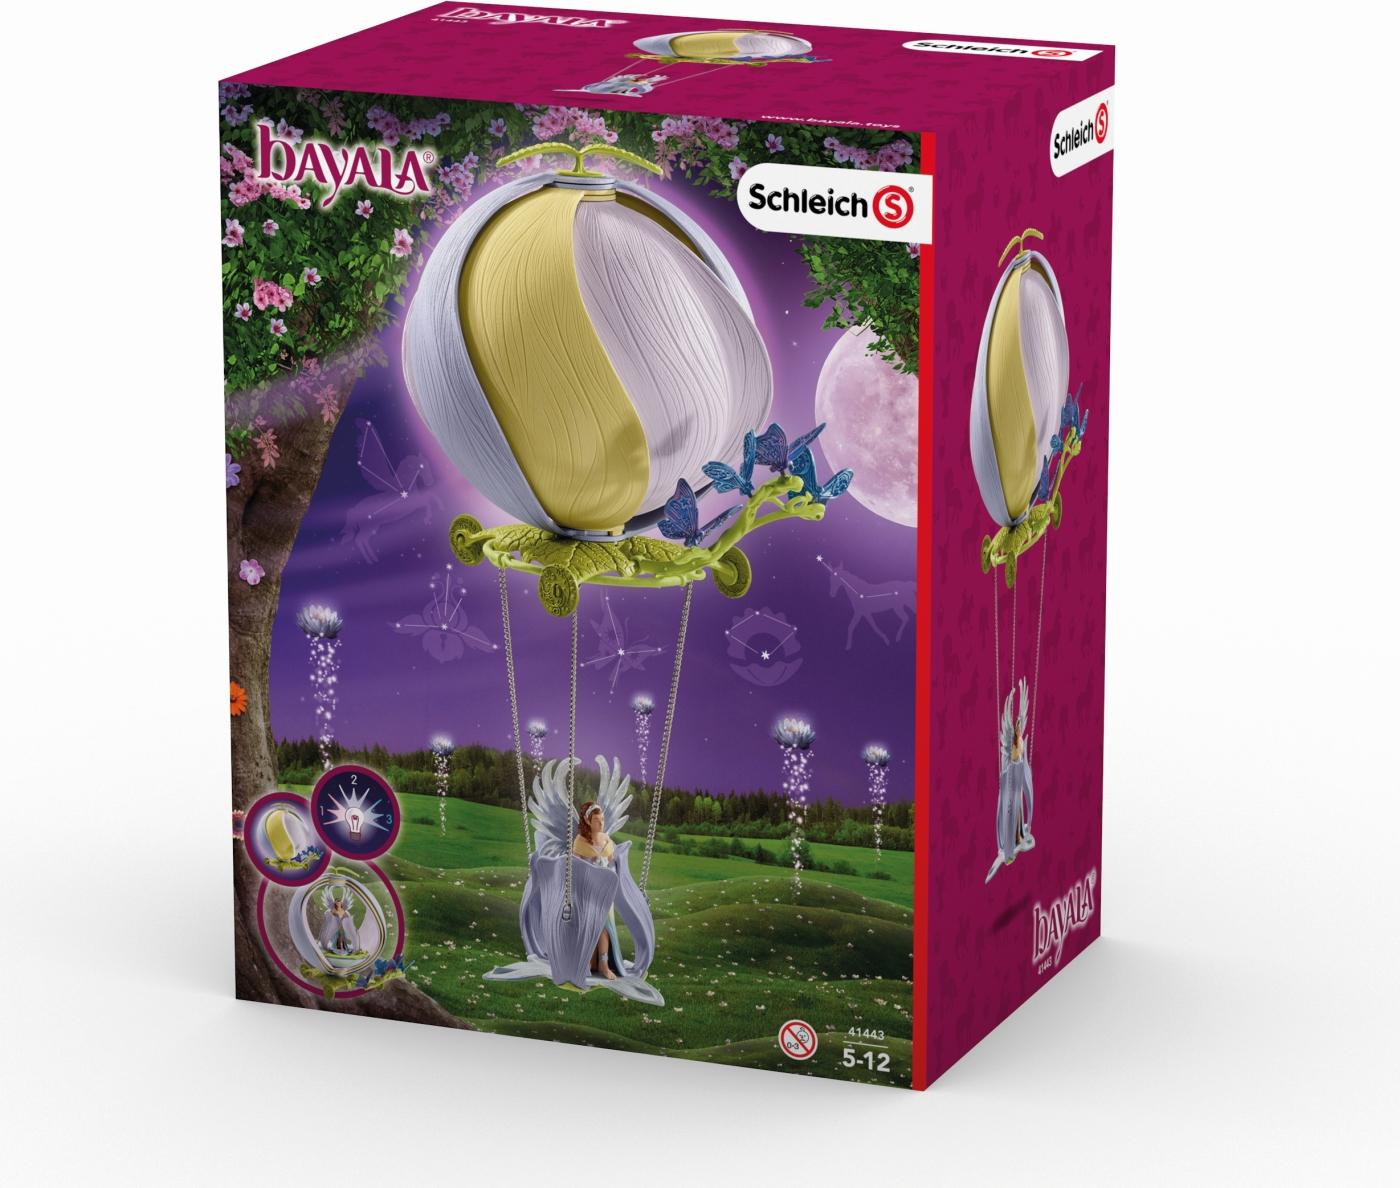 Игровой набор Bayala - Цветочный шар-карета с фигуркой эльфийки Эялы, свет  